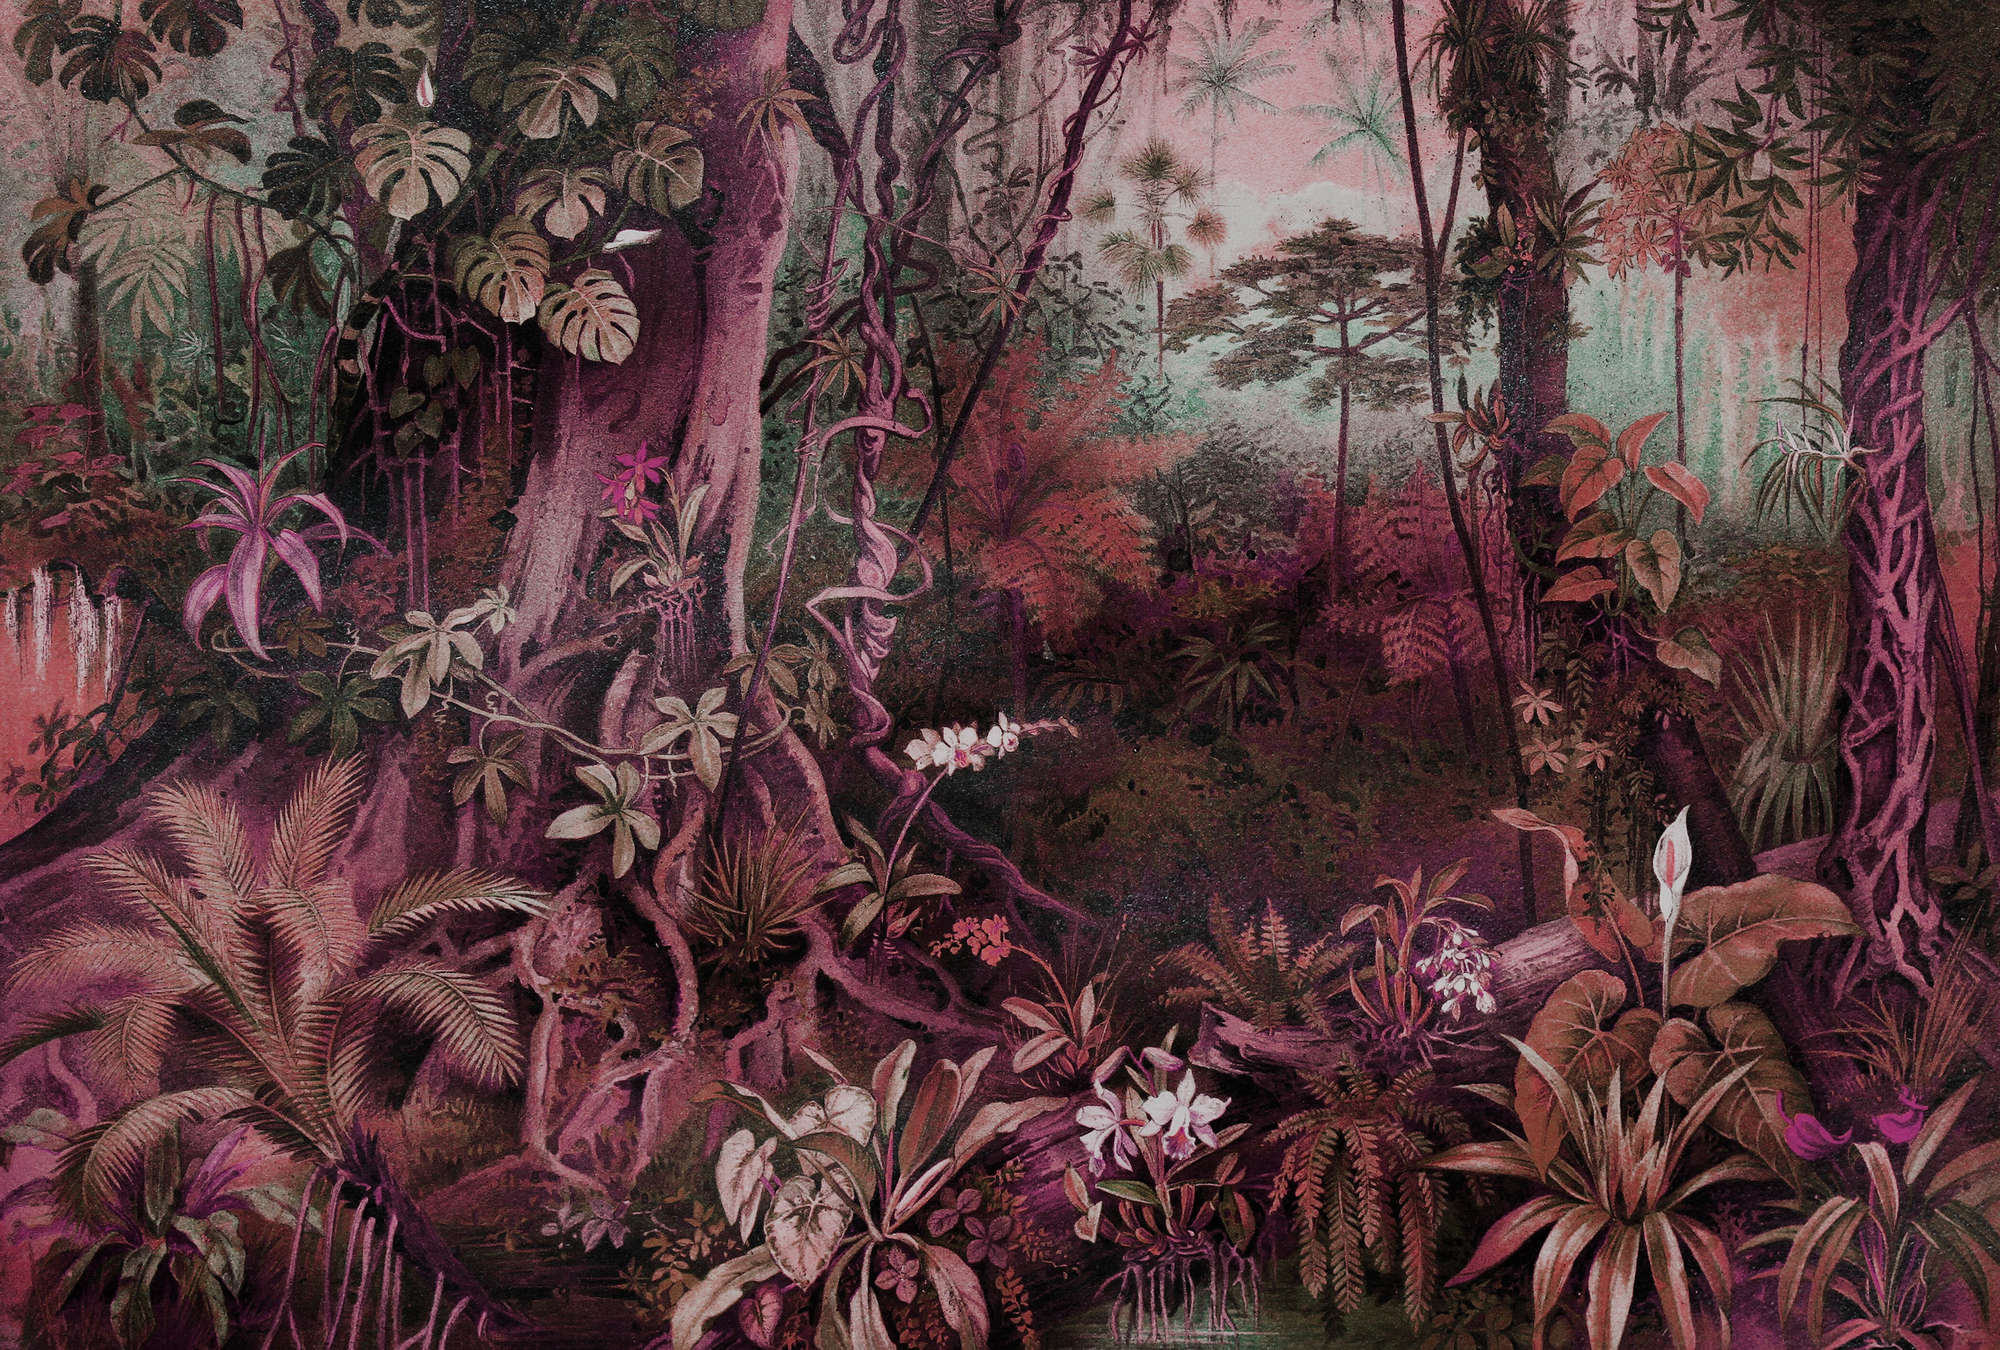             Mural estilo dibujo de la selva - Morado, Verde
        